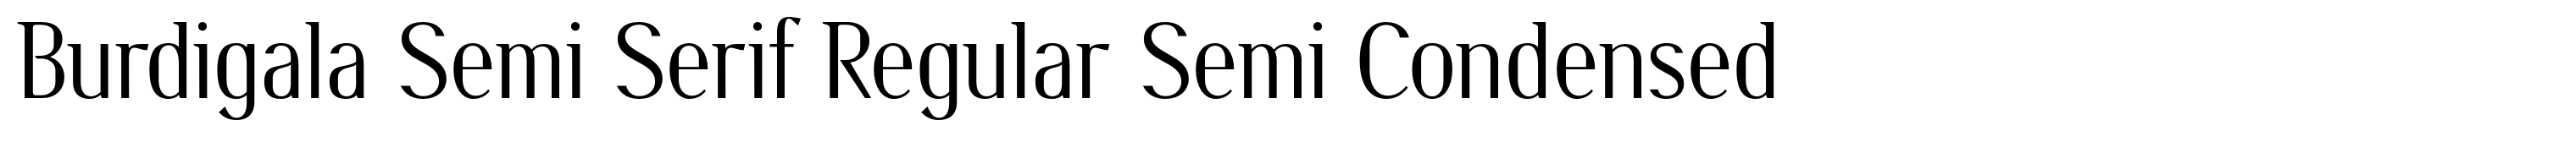 Burdigala Semi Serif Regular Semi Condensed